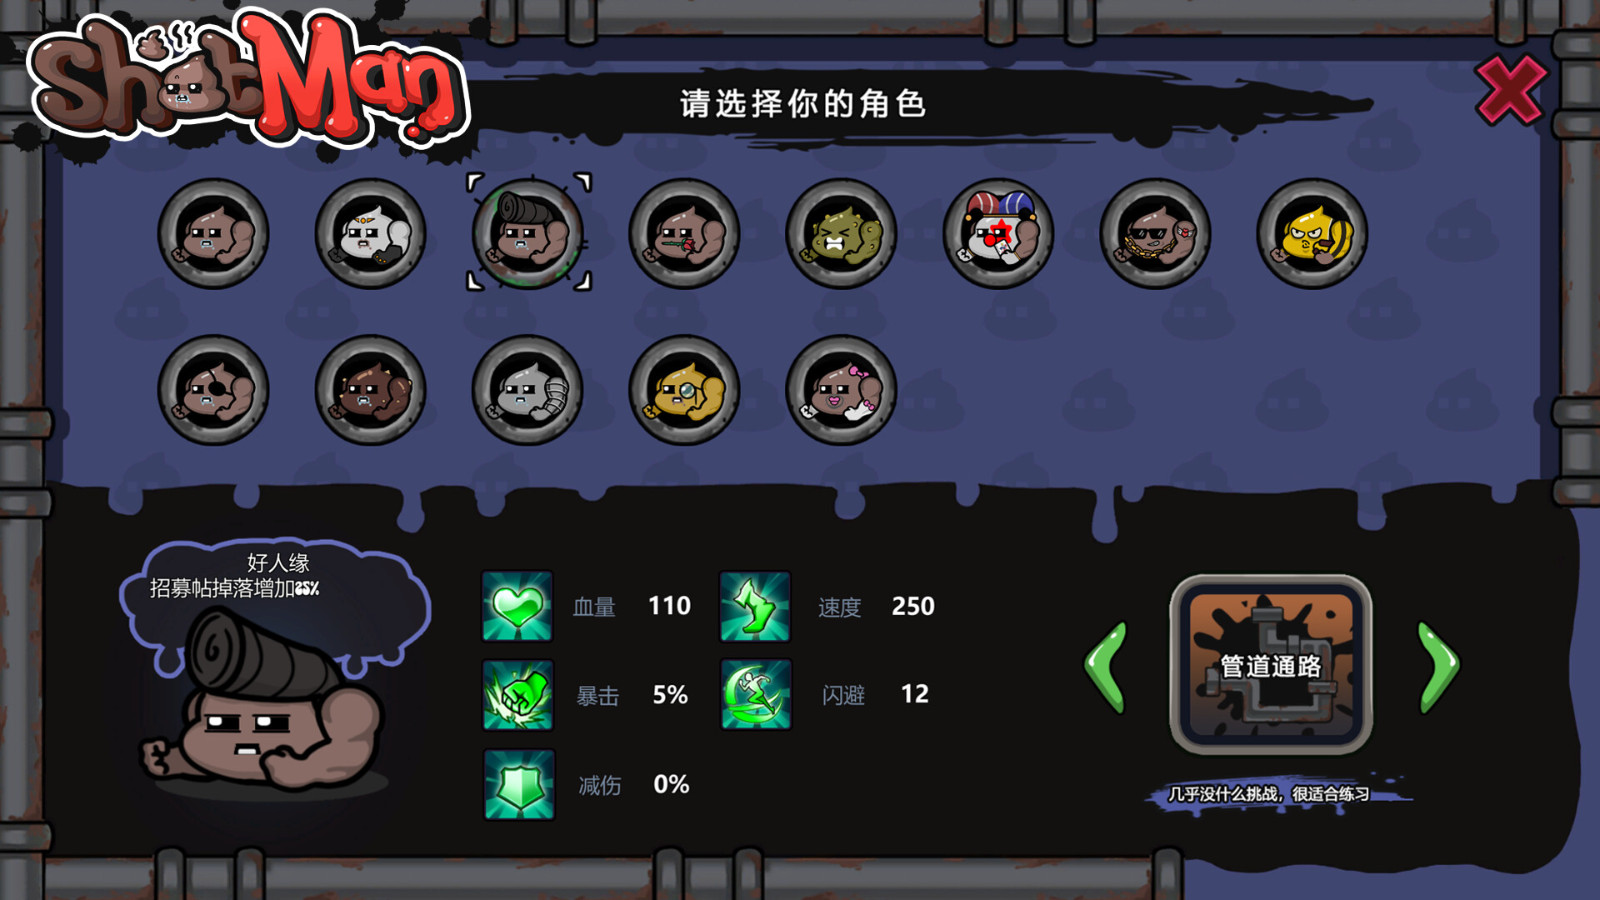 肉鸽游戏《ShitMan》Steam页面上线 反对于简繁体中文